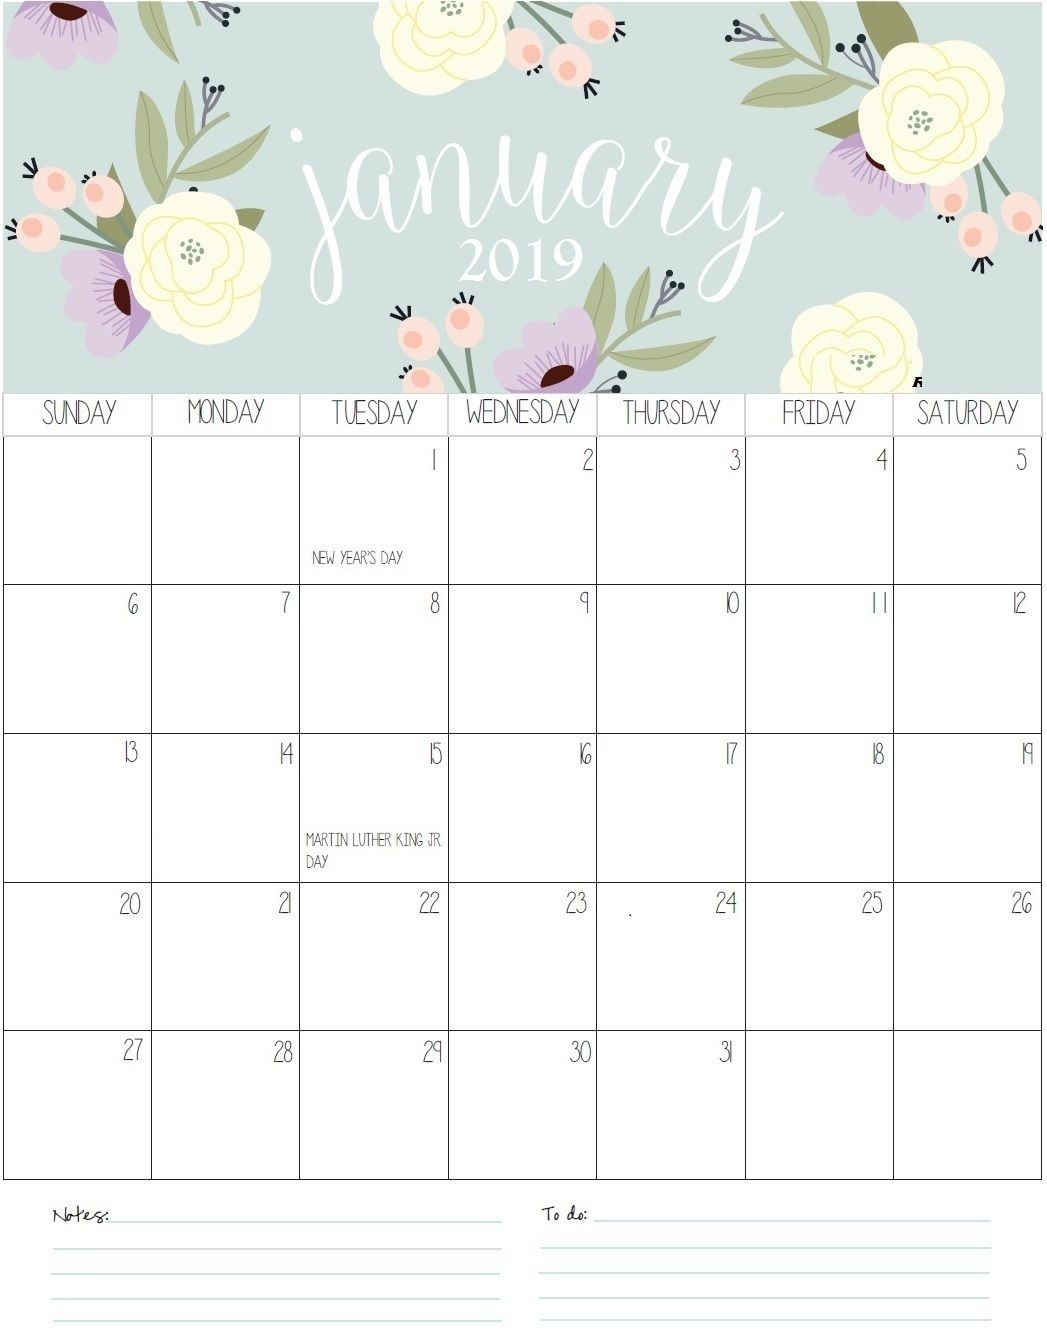 January Monthly Calendar 2019 | Calendar Wallpaper, January January Month At A Glance Calendar Page